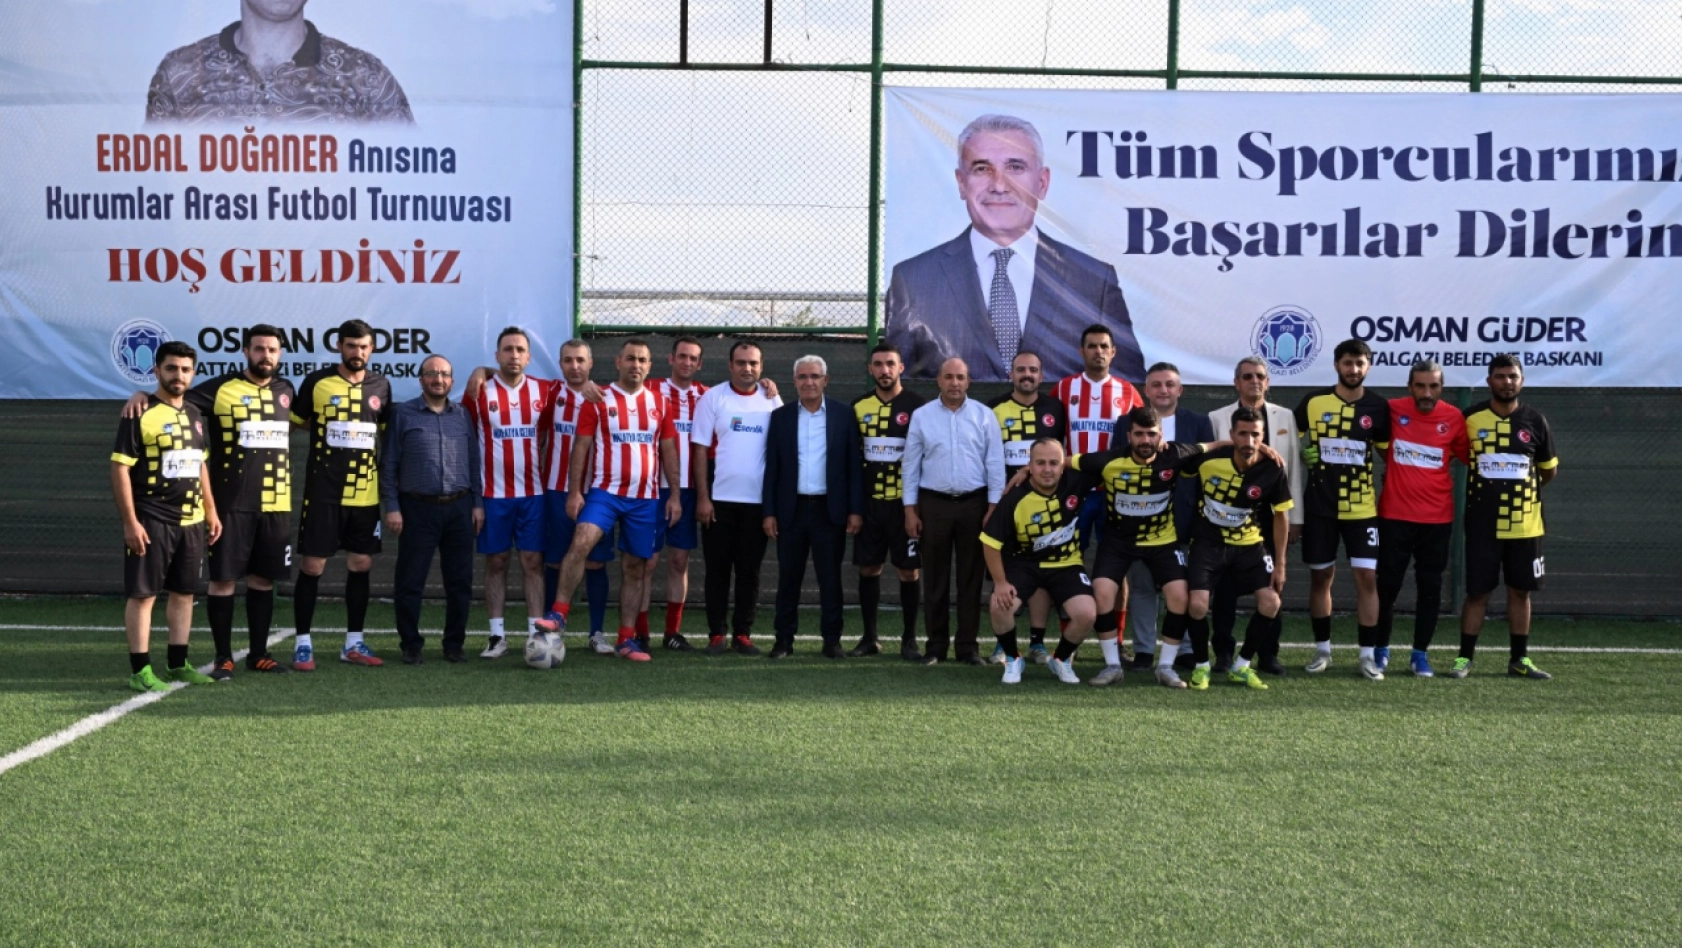 Battalgazi Belediyesinden Anlamlı Futbol Tunuvası